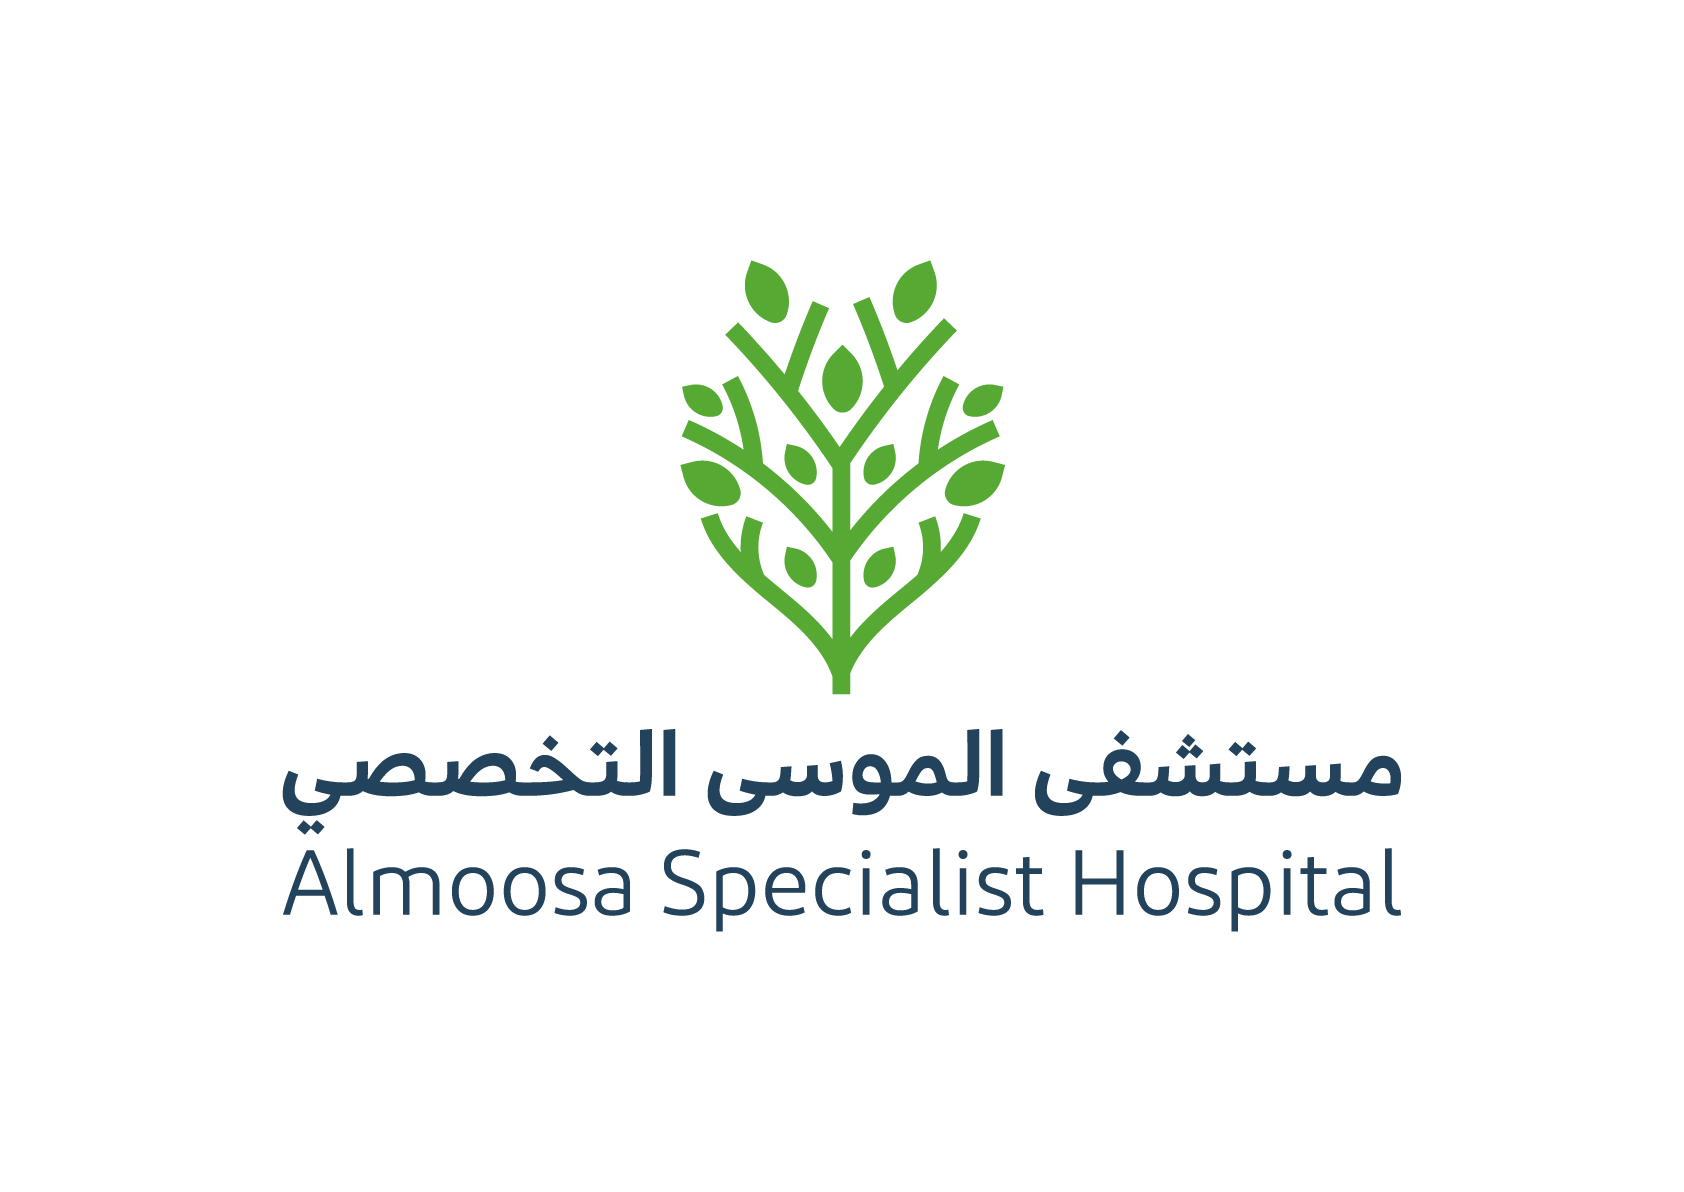 Al-Mousa Hospital